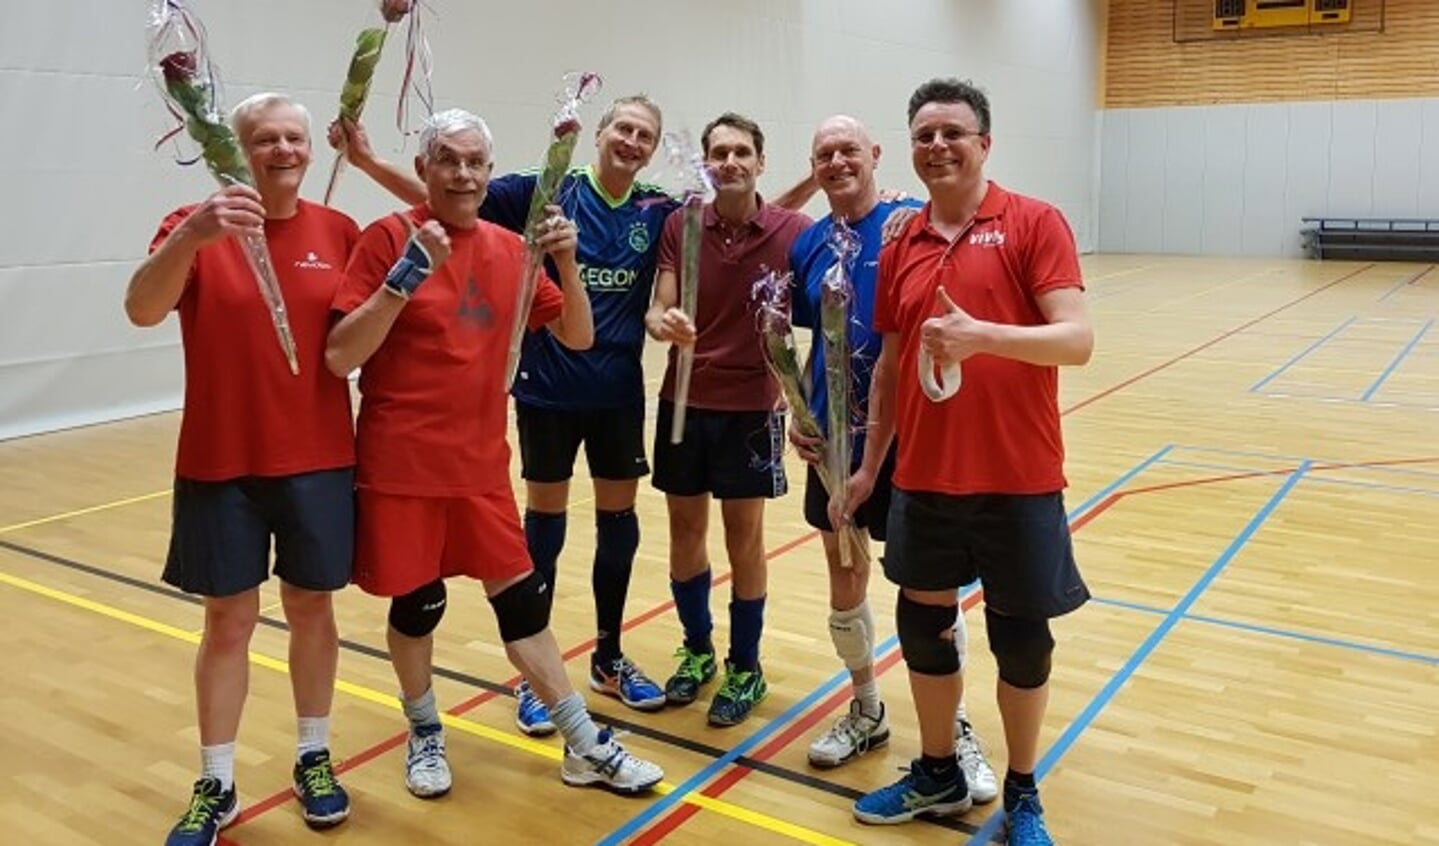 Volleybalteam Vives Heren 2 (HR2) is voor de tweede keer recreatie kampioen poule B district Utrecht geworden.
